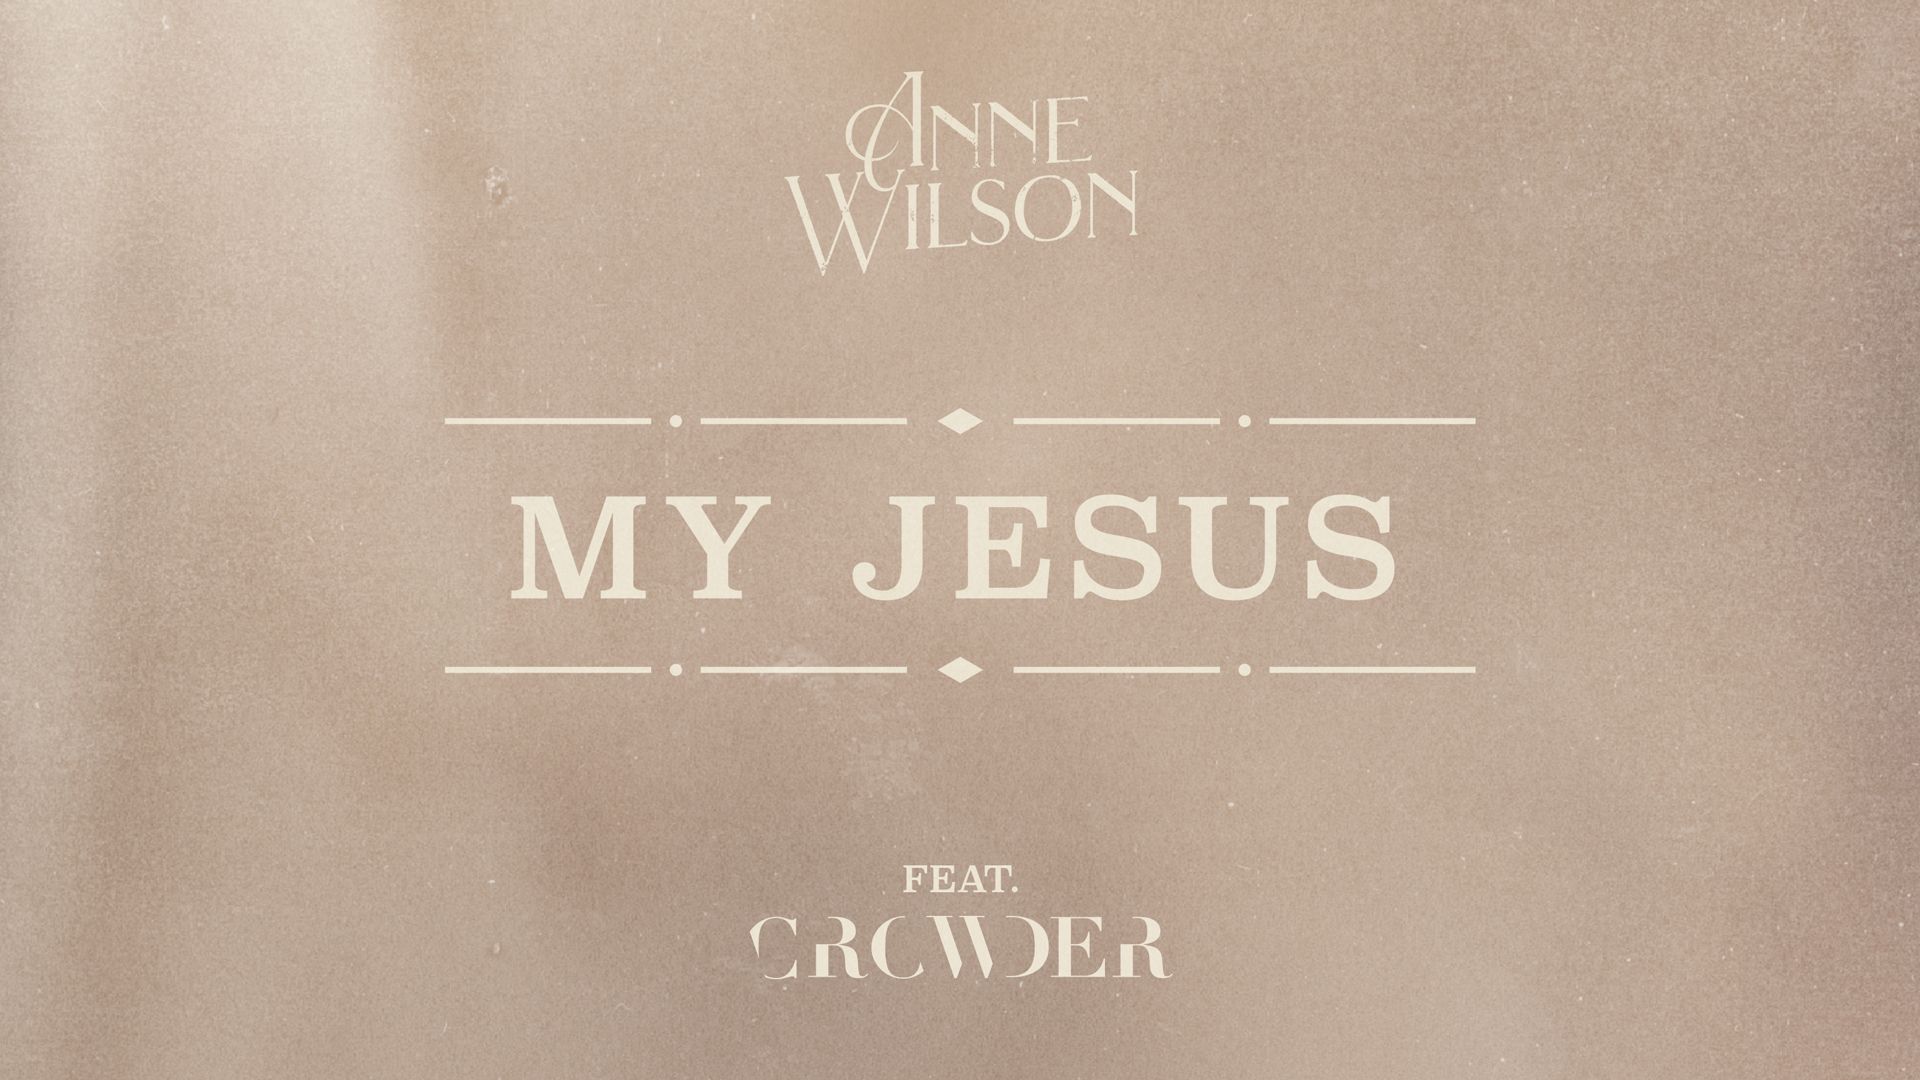 My Jesus (feat. Crowder)